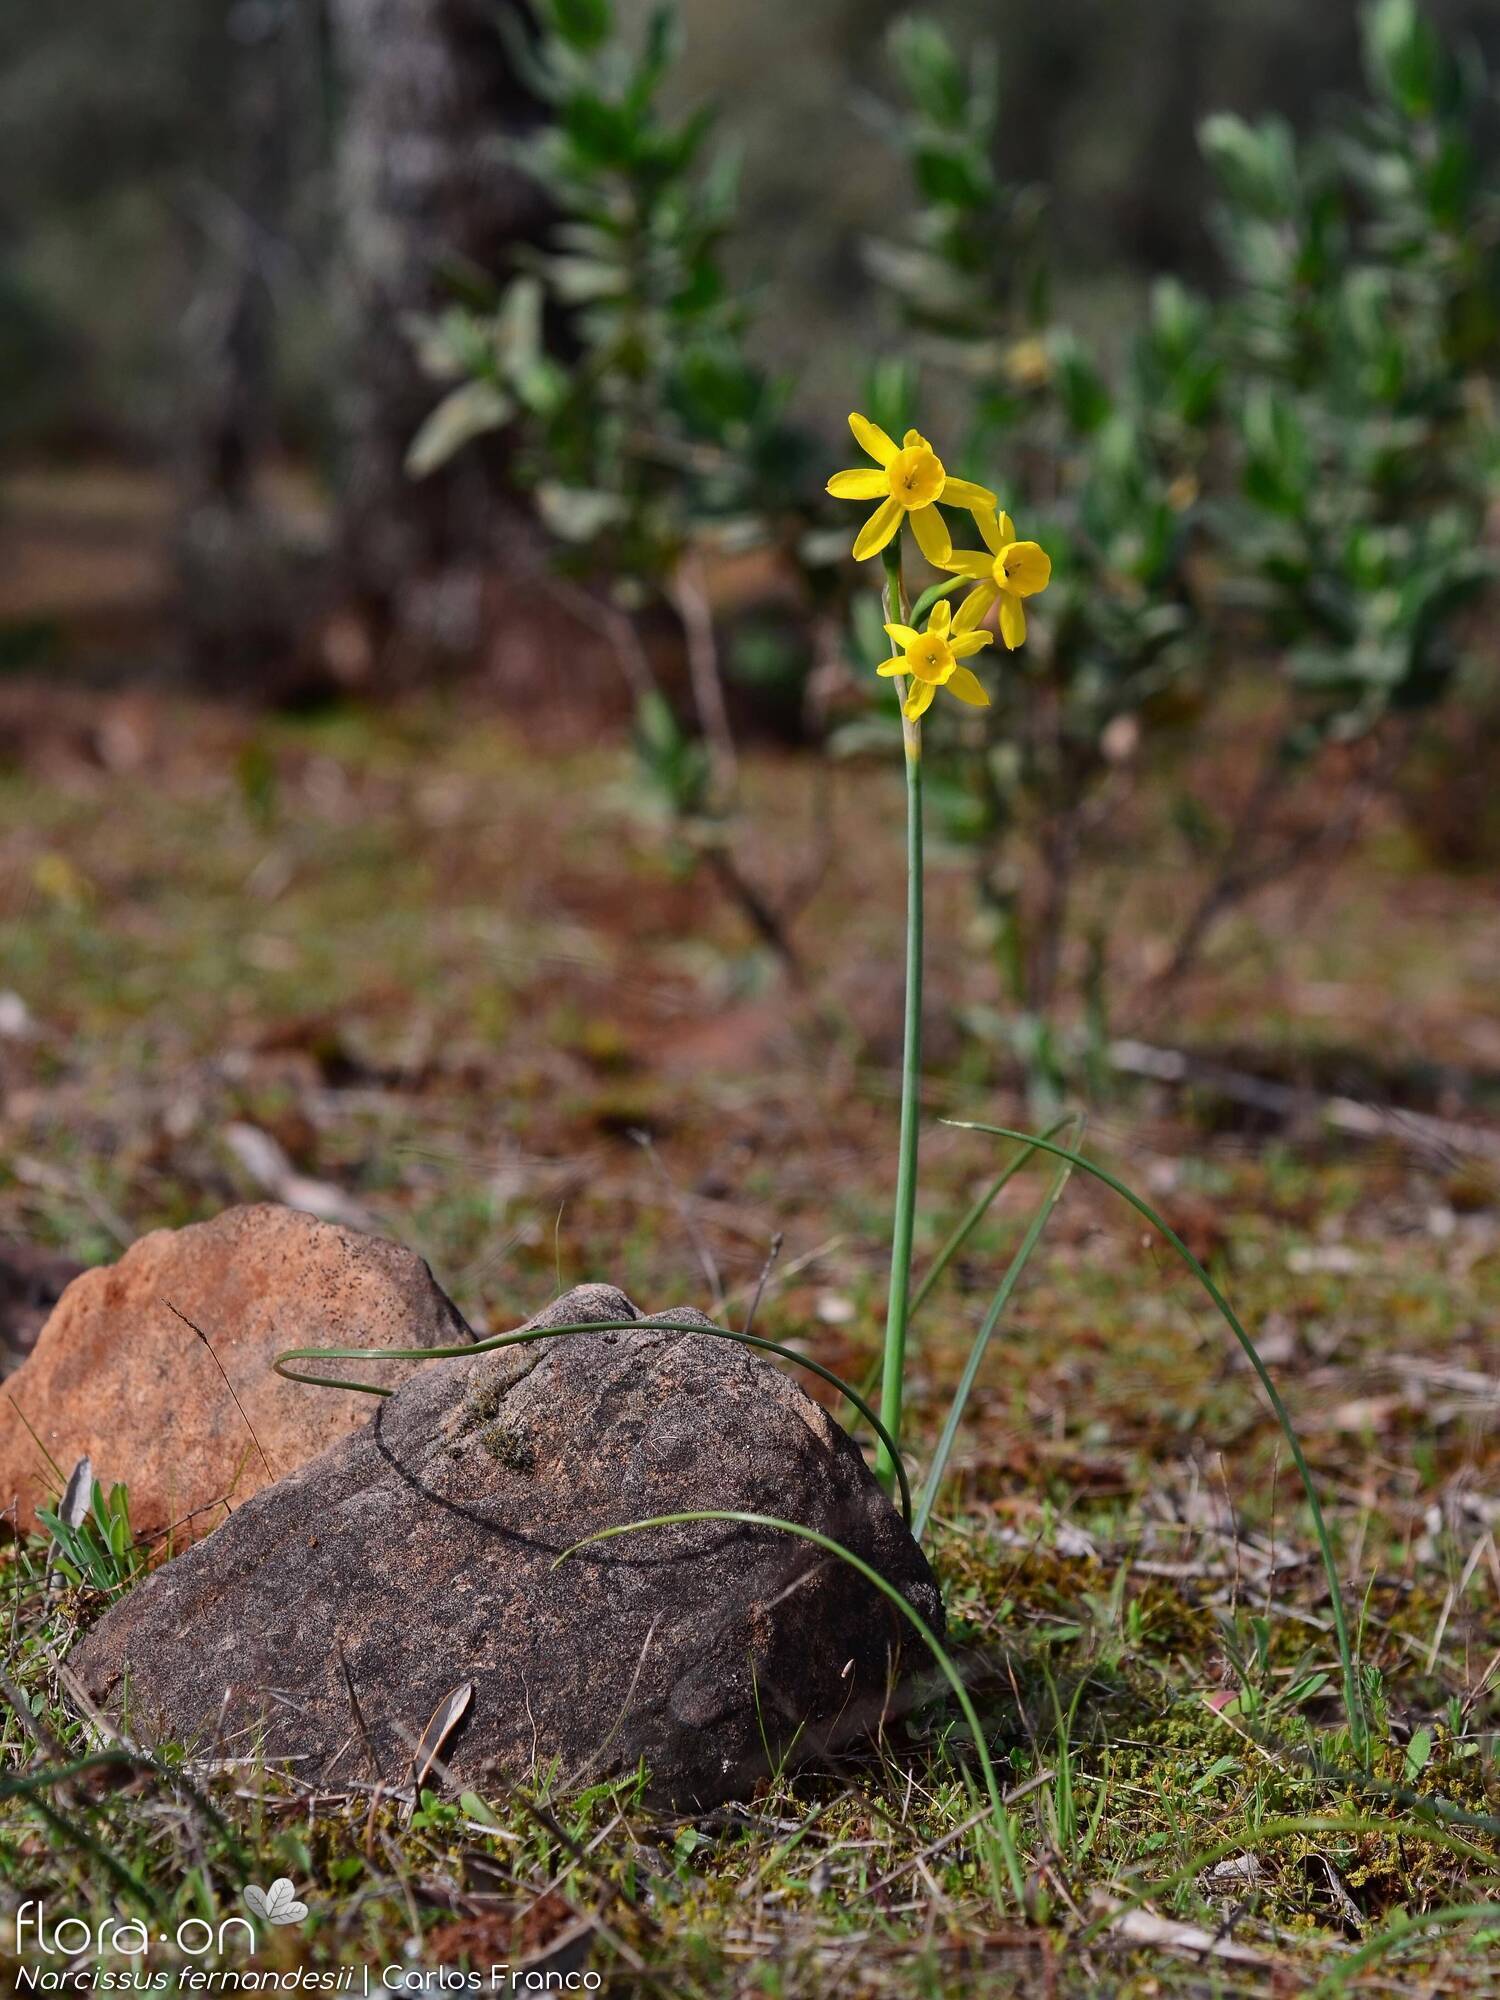 Narcissus fernandesii - Habitat | Carlos Franco; CC BY-NC 4.0